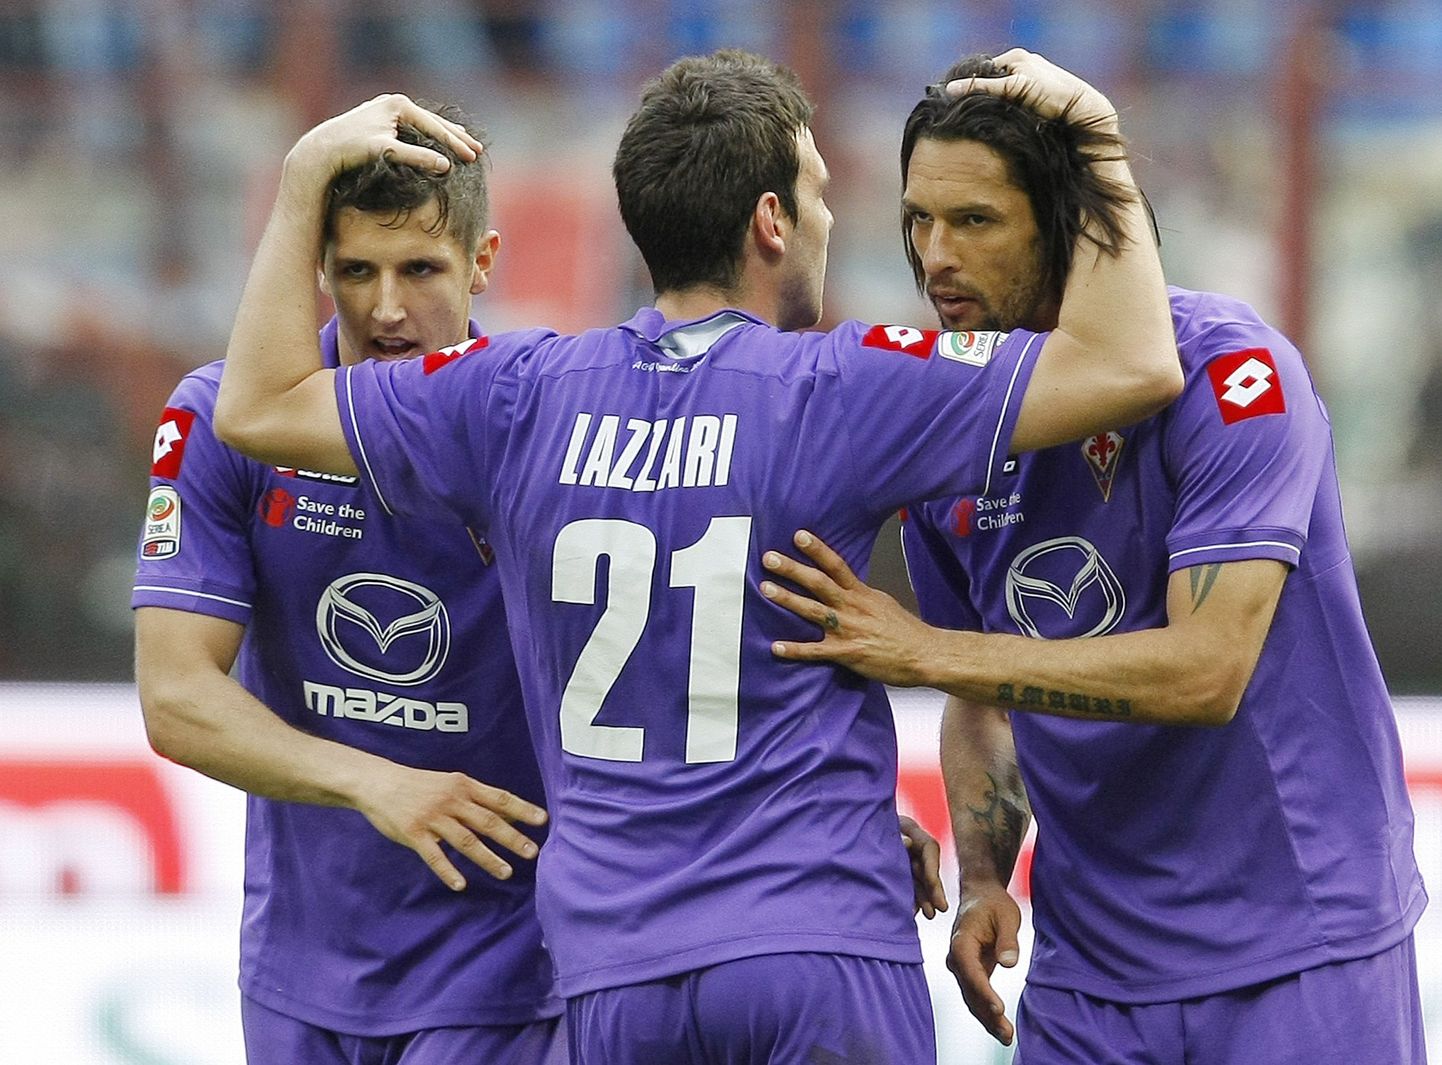 Fiorentina mängijad Andrea Lazzari (keskel), Stevan Jovetic (vasakul) ja Amauri tähistavad võitu AC Milani üle.